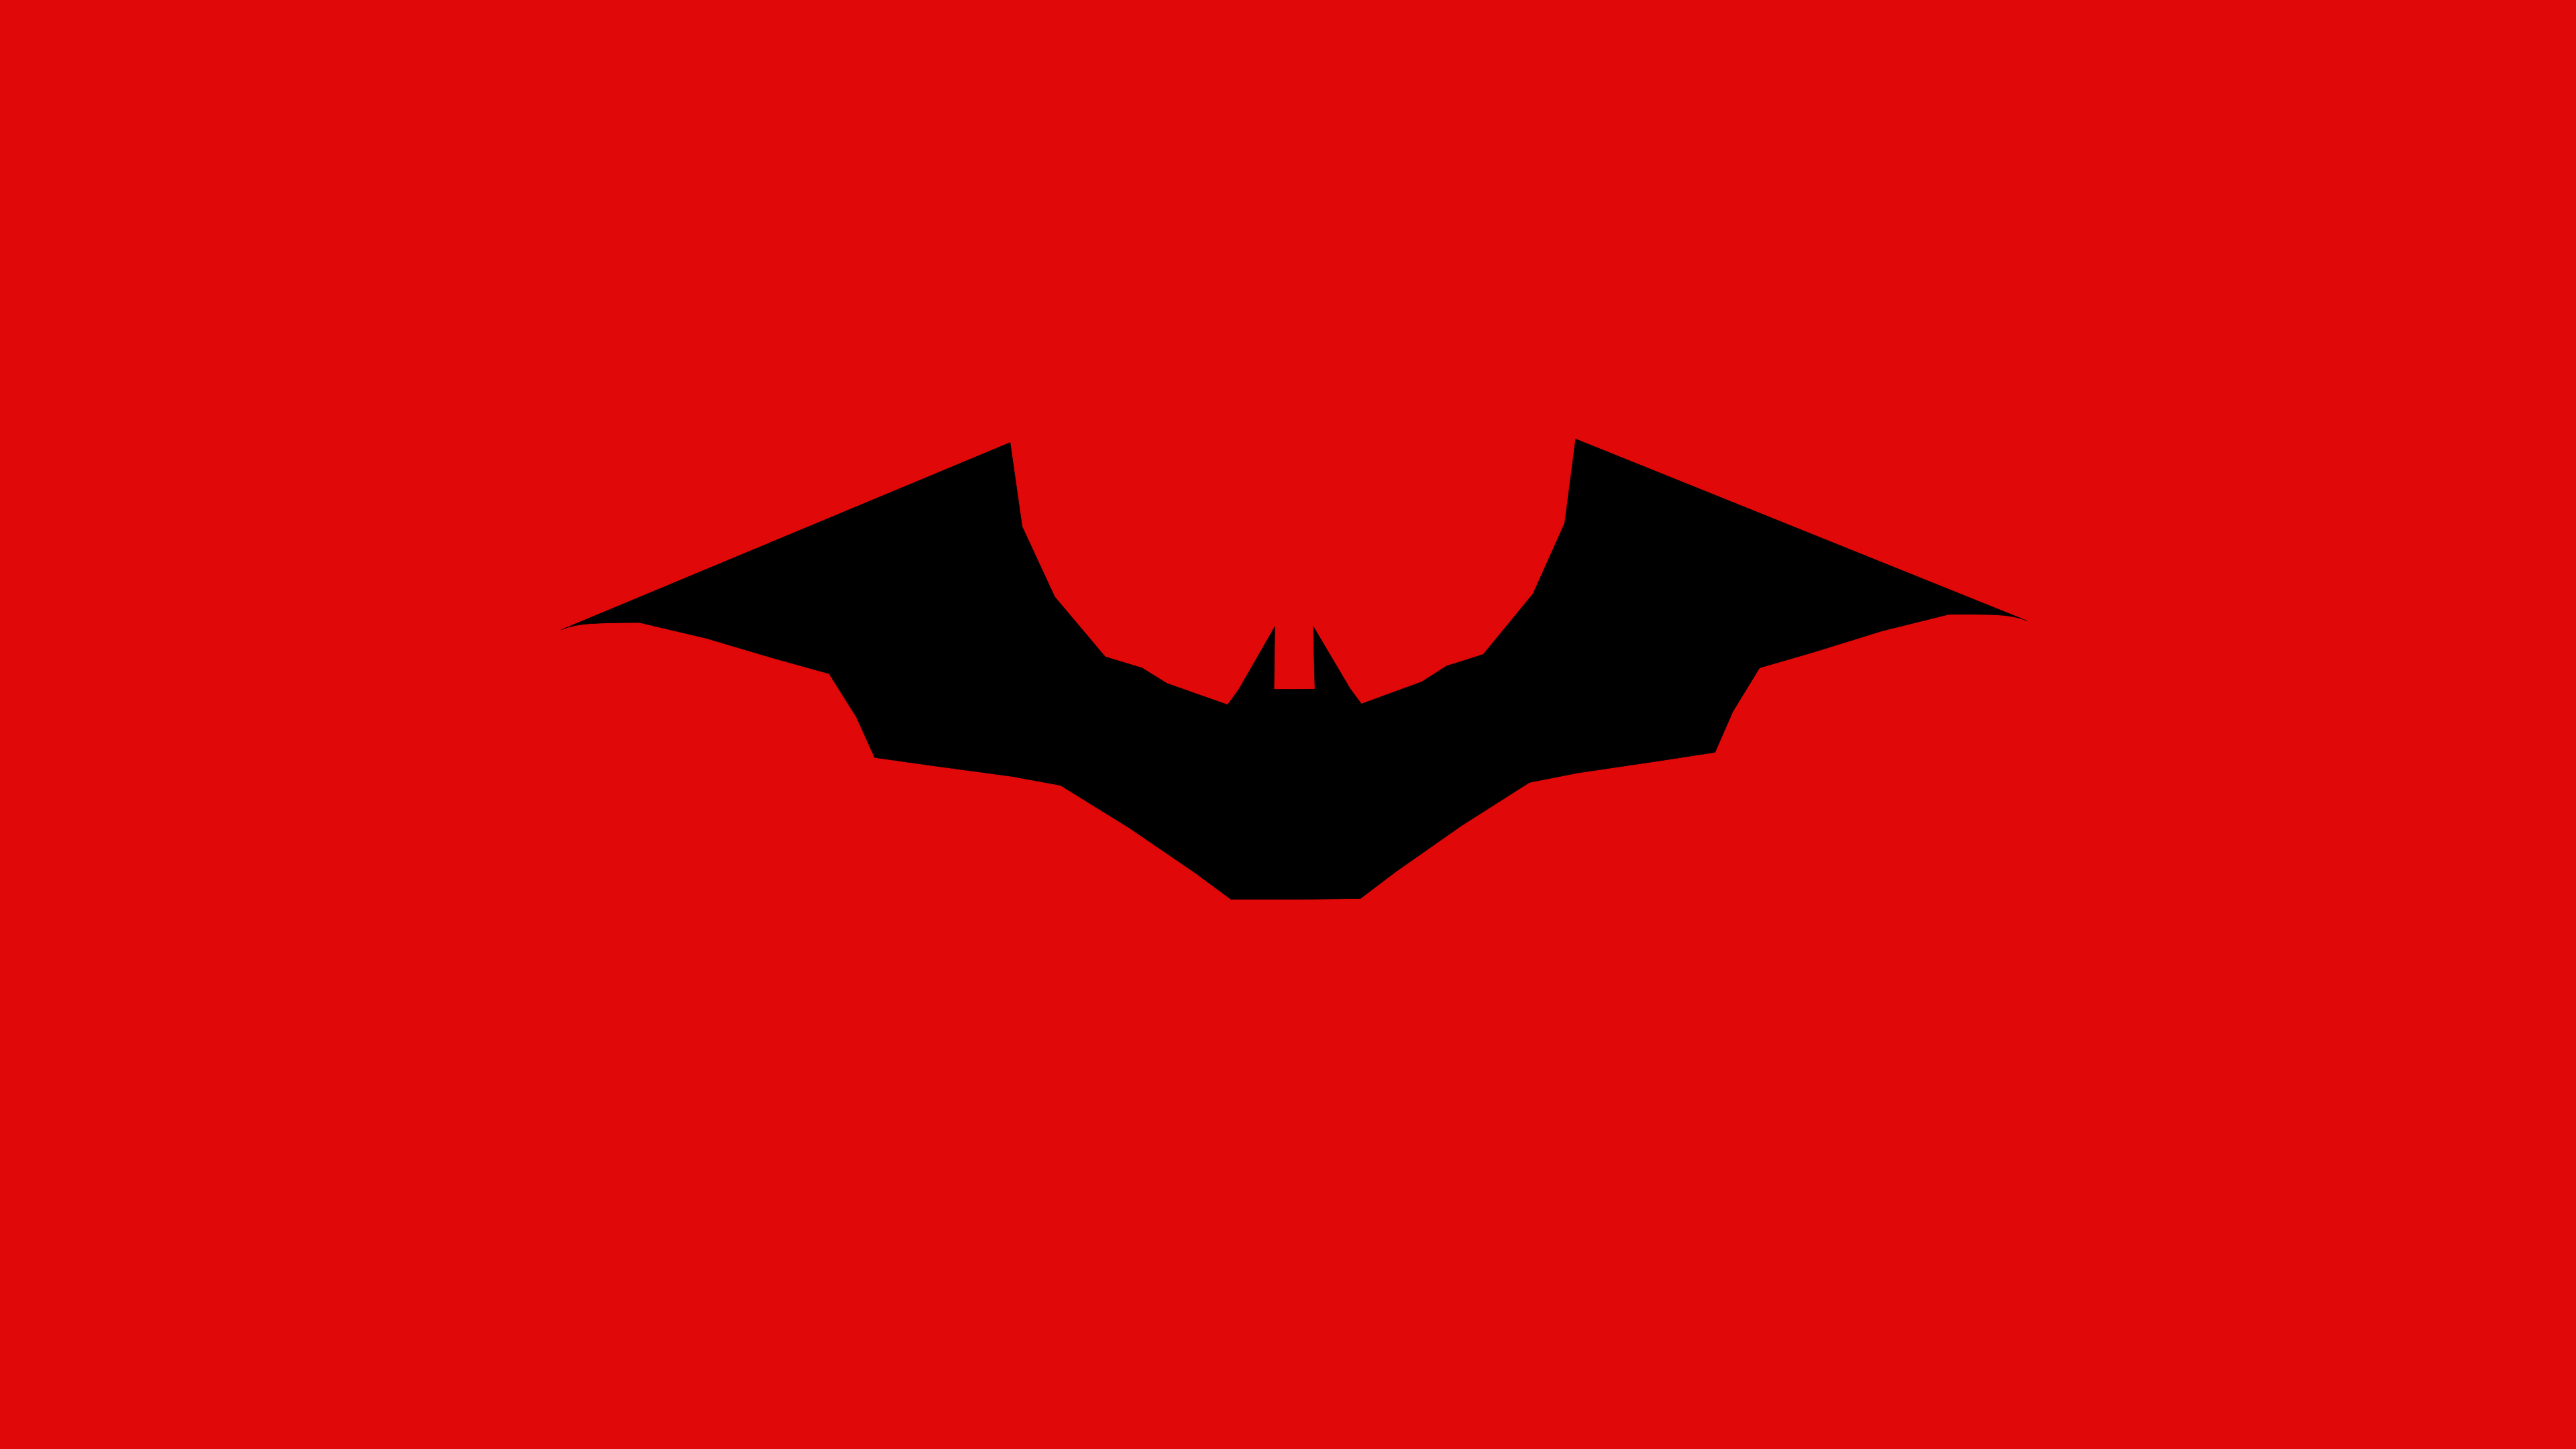 General 3840x2160 comics DC Comics Batman Batman logo The Batman (2022) simple background The Batman (2021) bats red background logo digital art minimalism